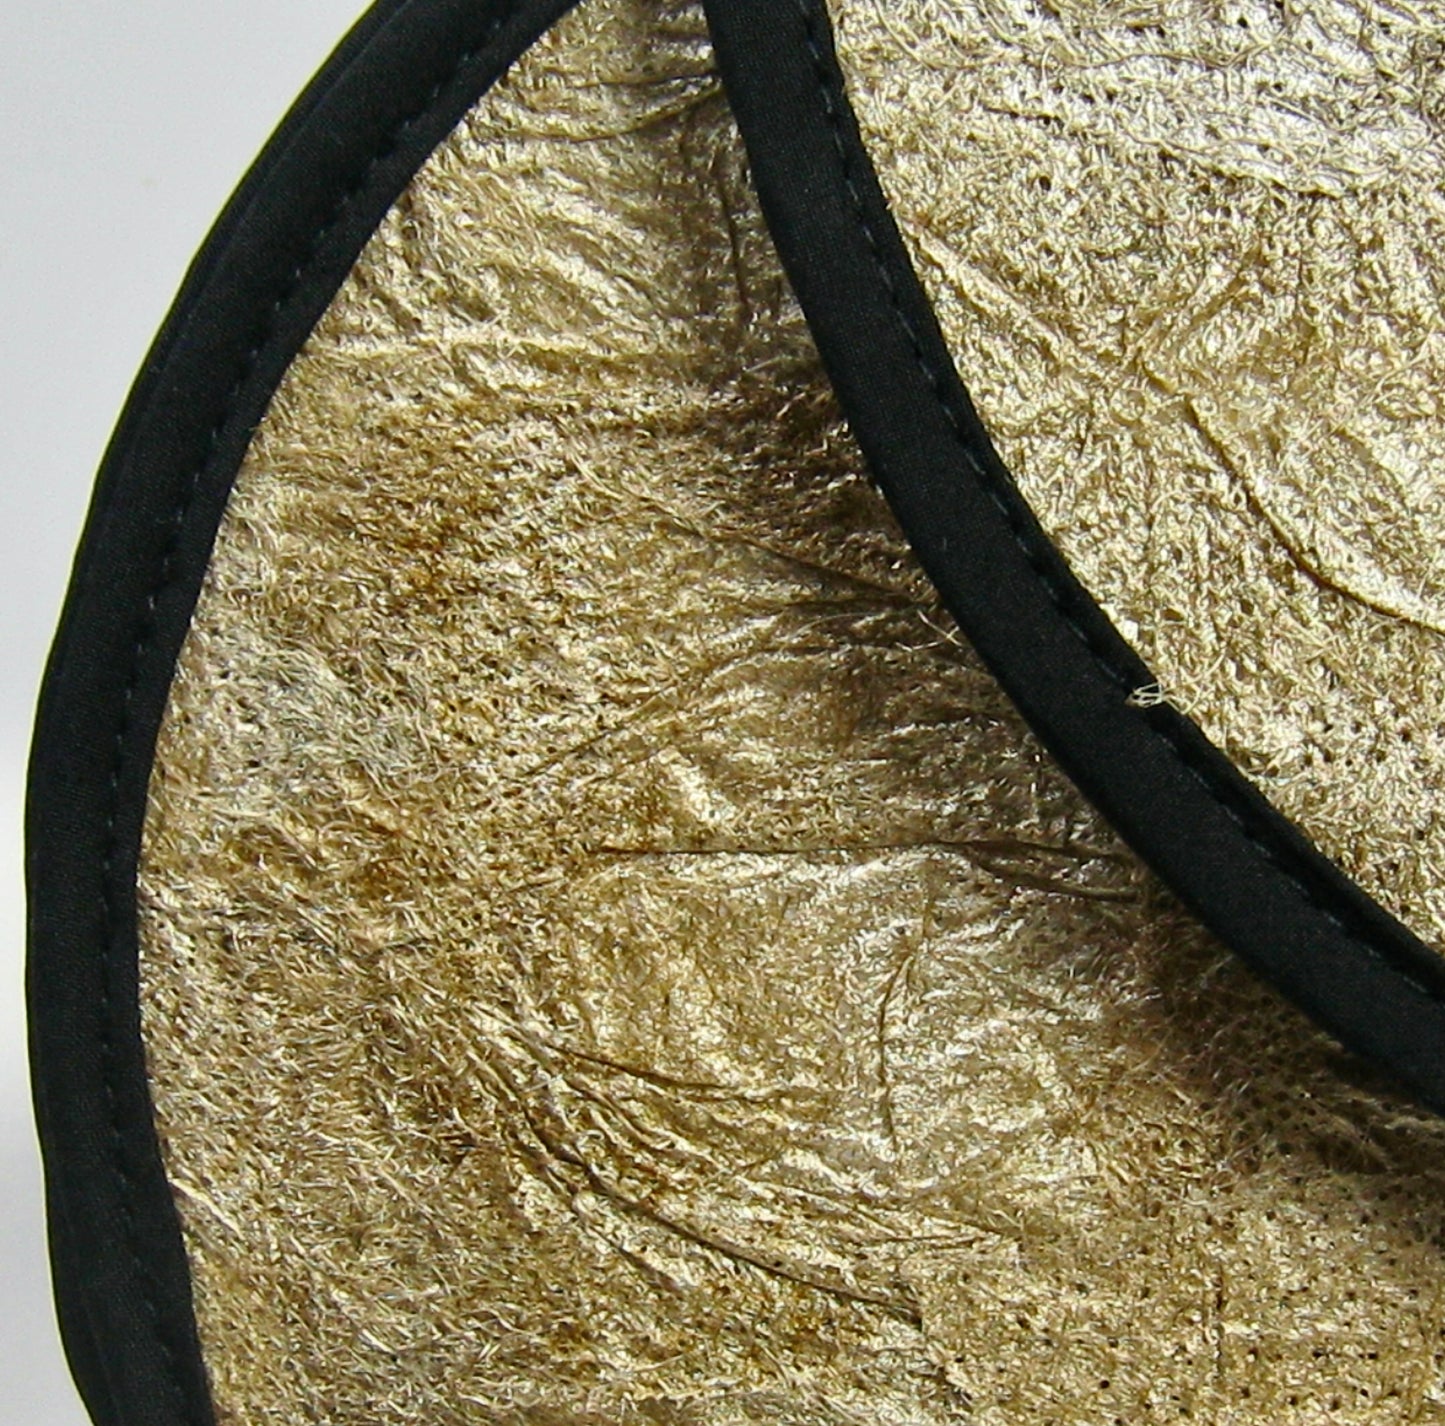 Oval Handbag - Cocoon Silk